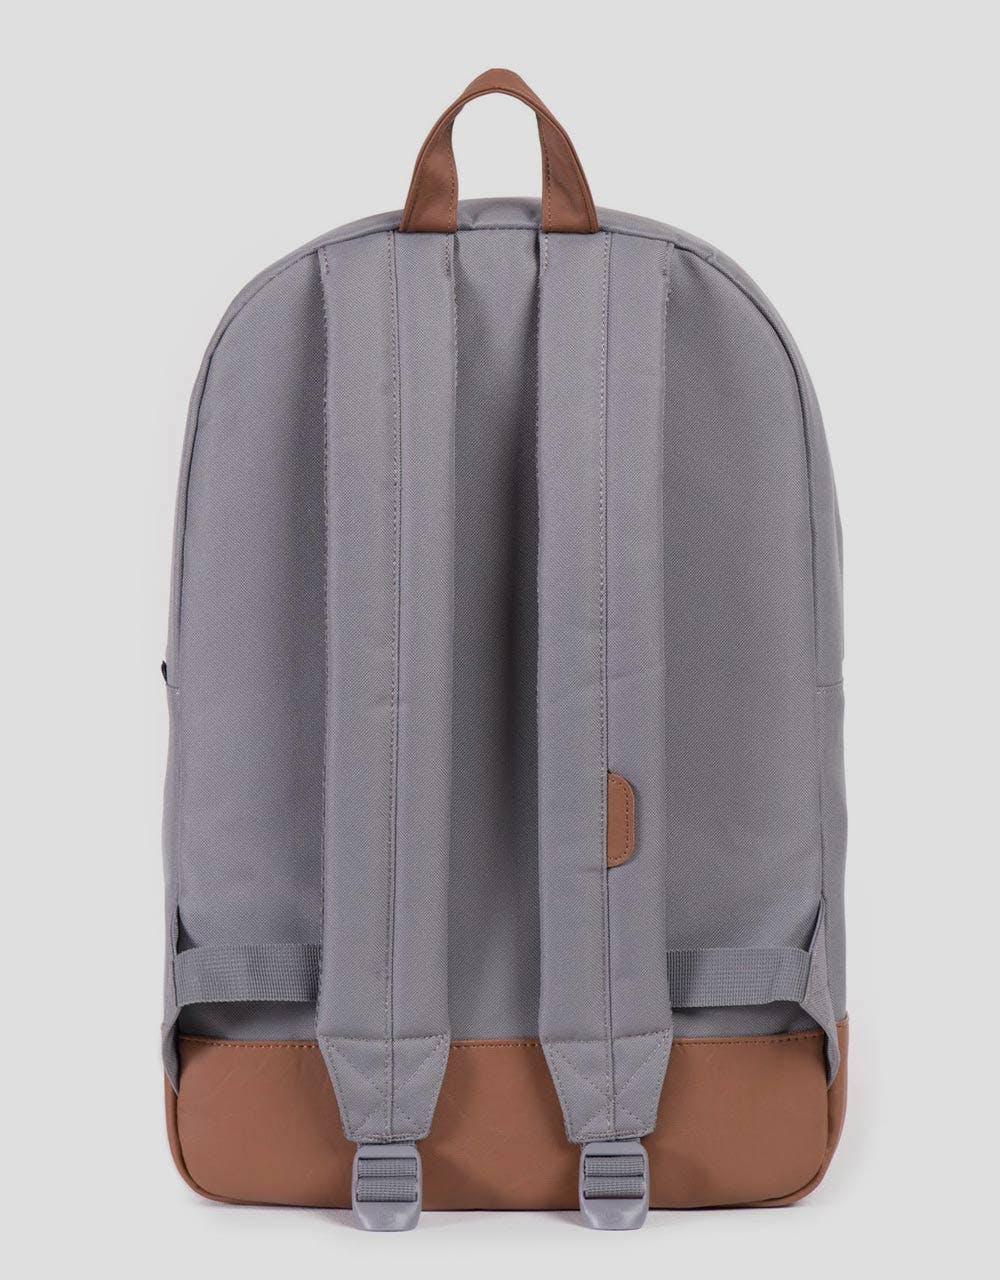 Herschel Supply Co. Heritage Backpack - Grey/Tan